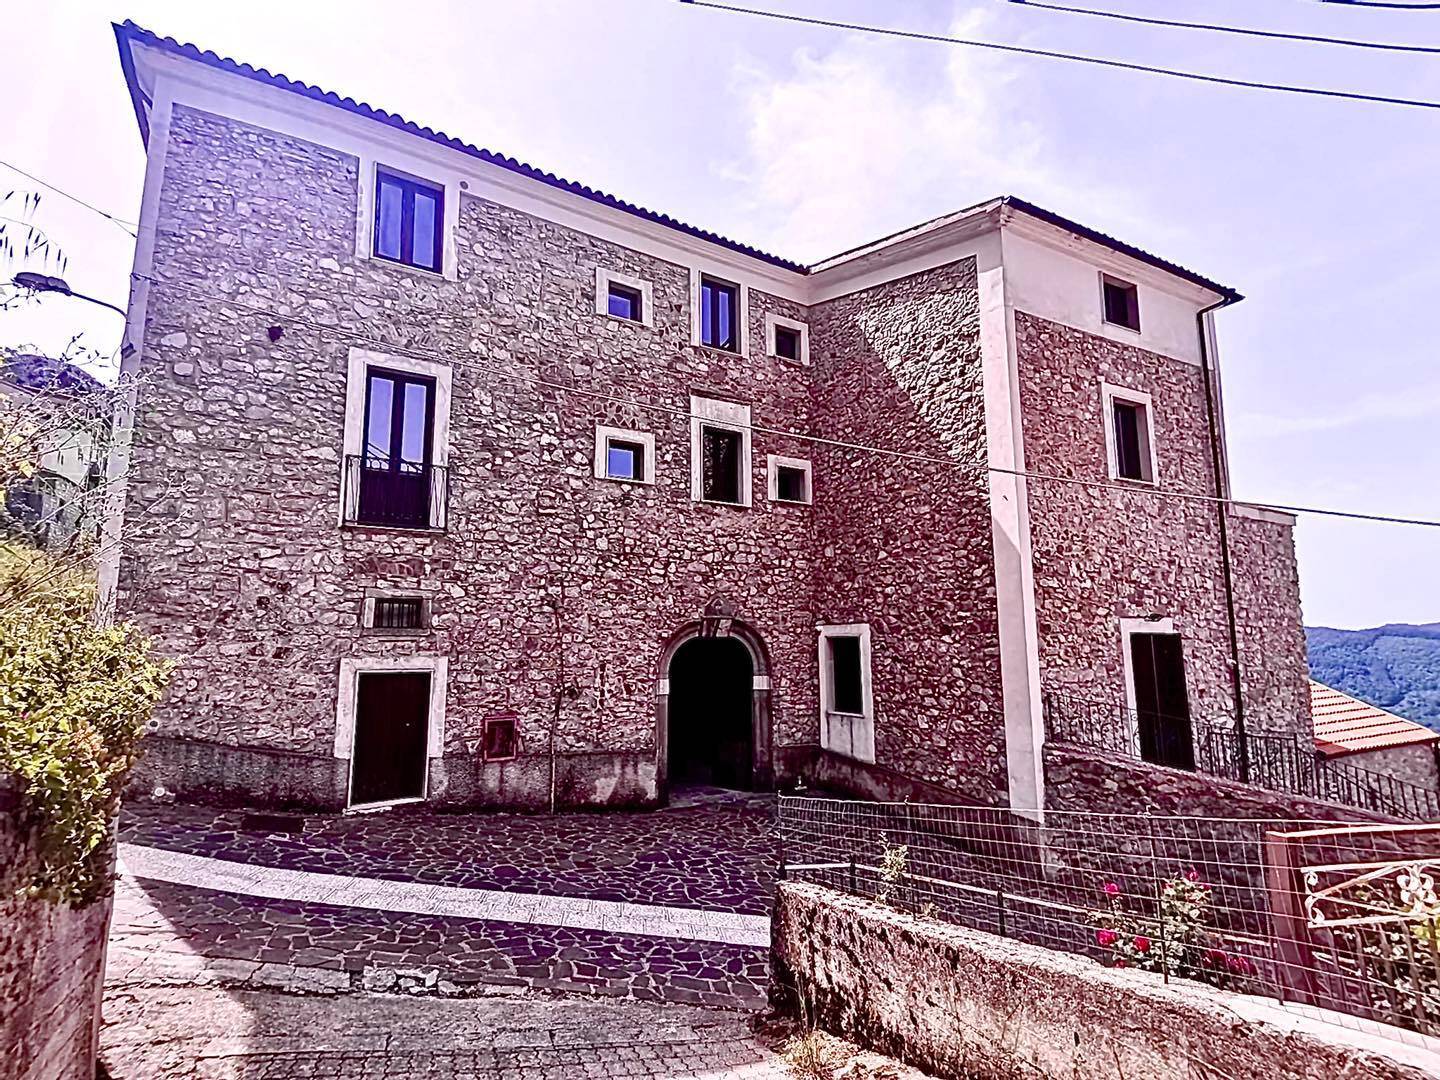 Palazzo LOmbardi Magliano Vetere